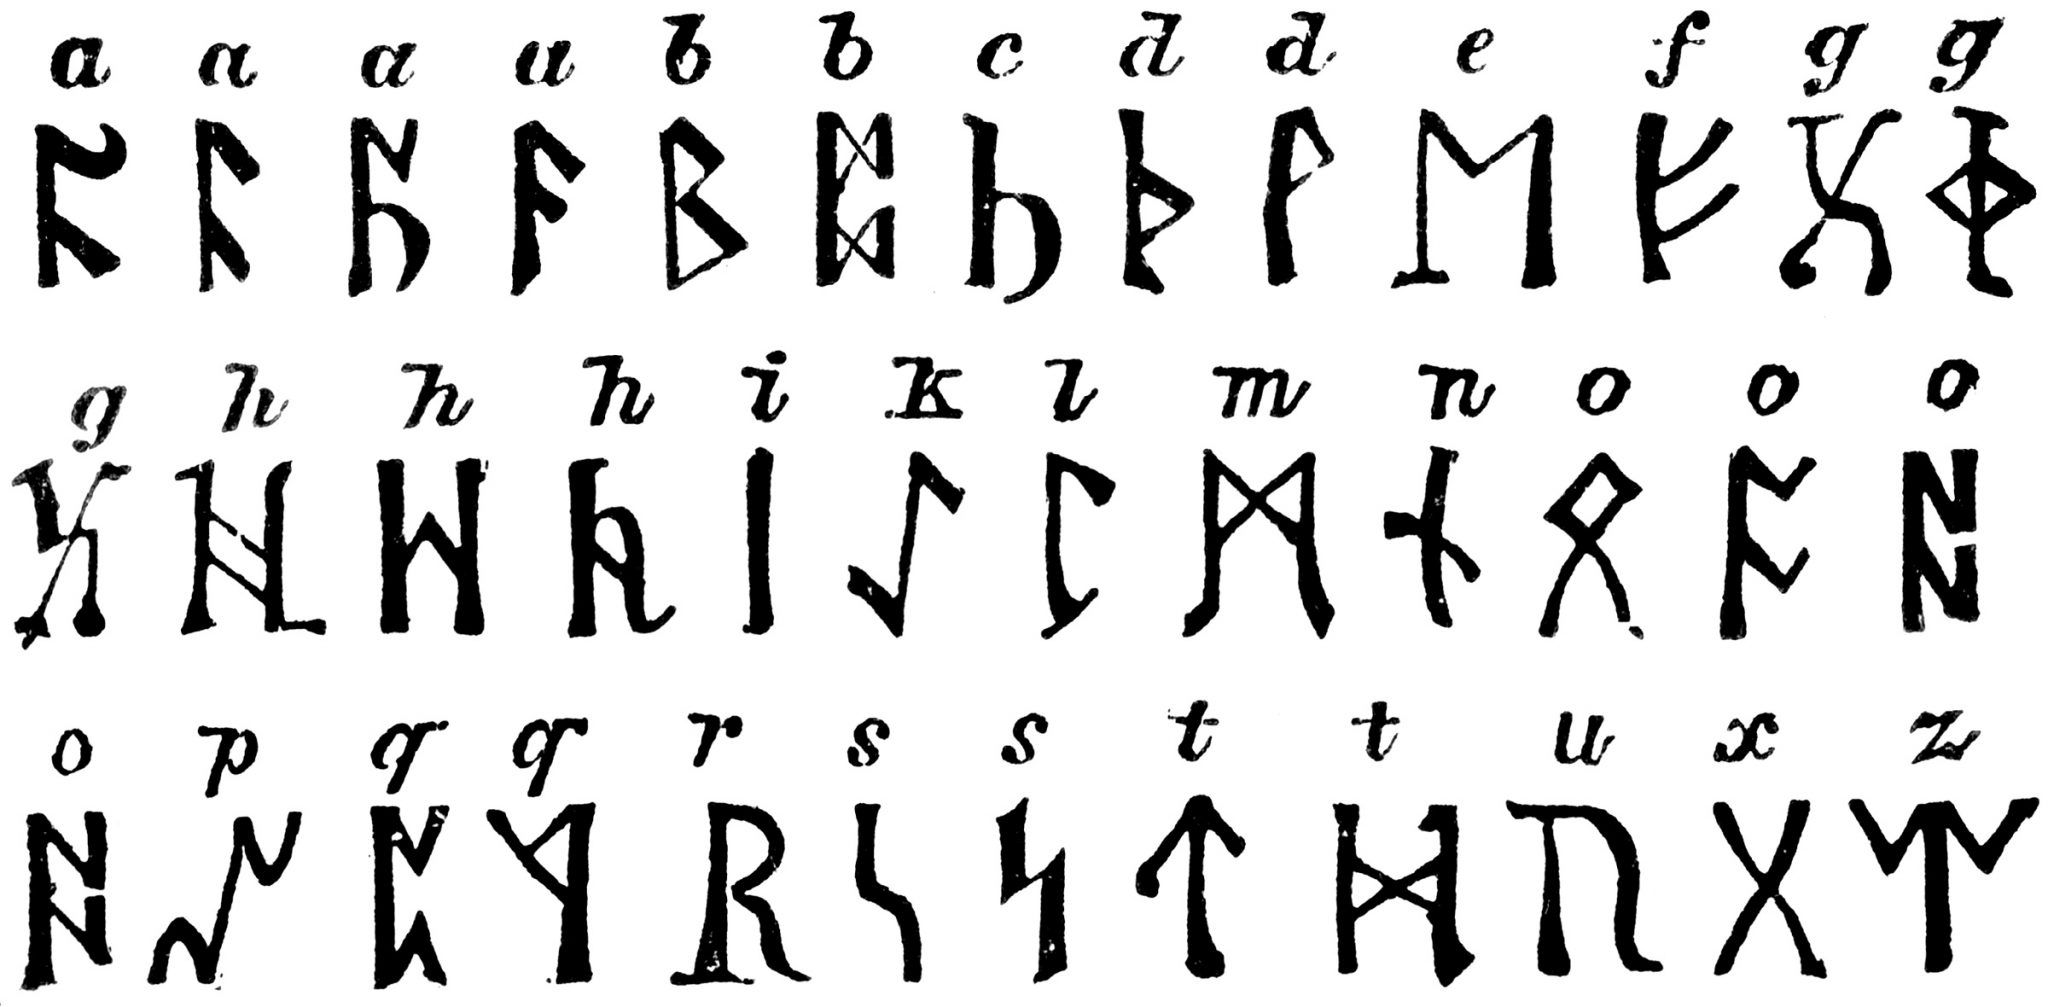 Рунный алфавит викингов